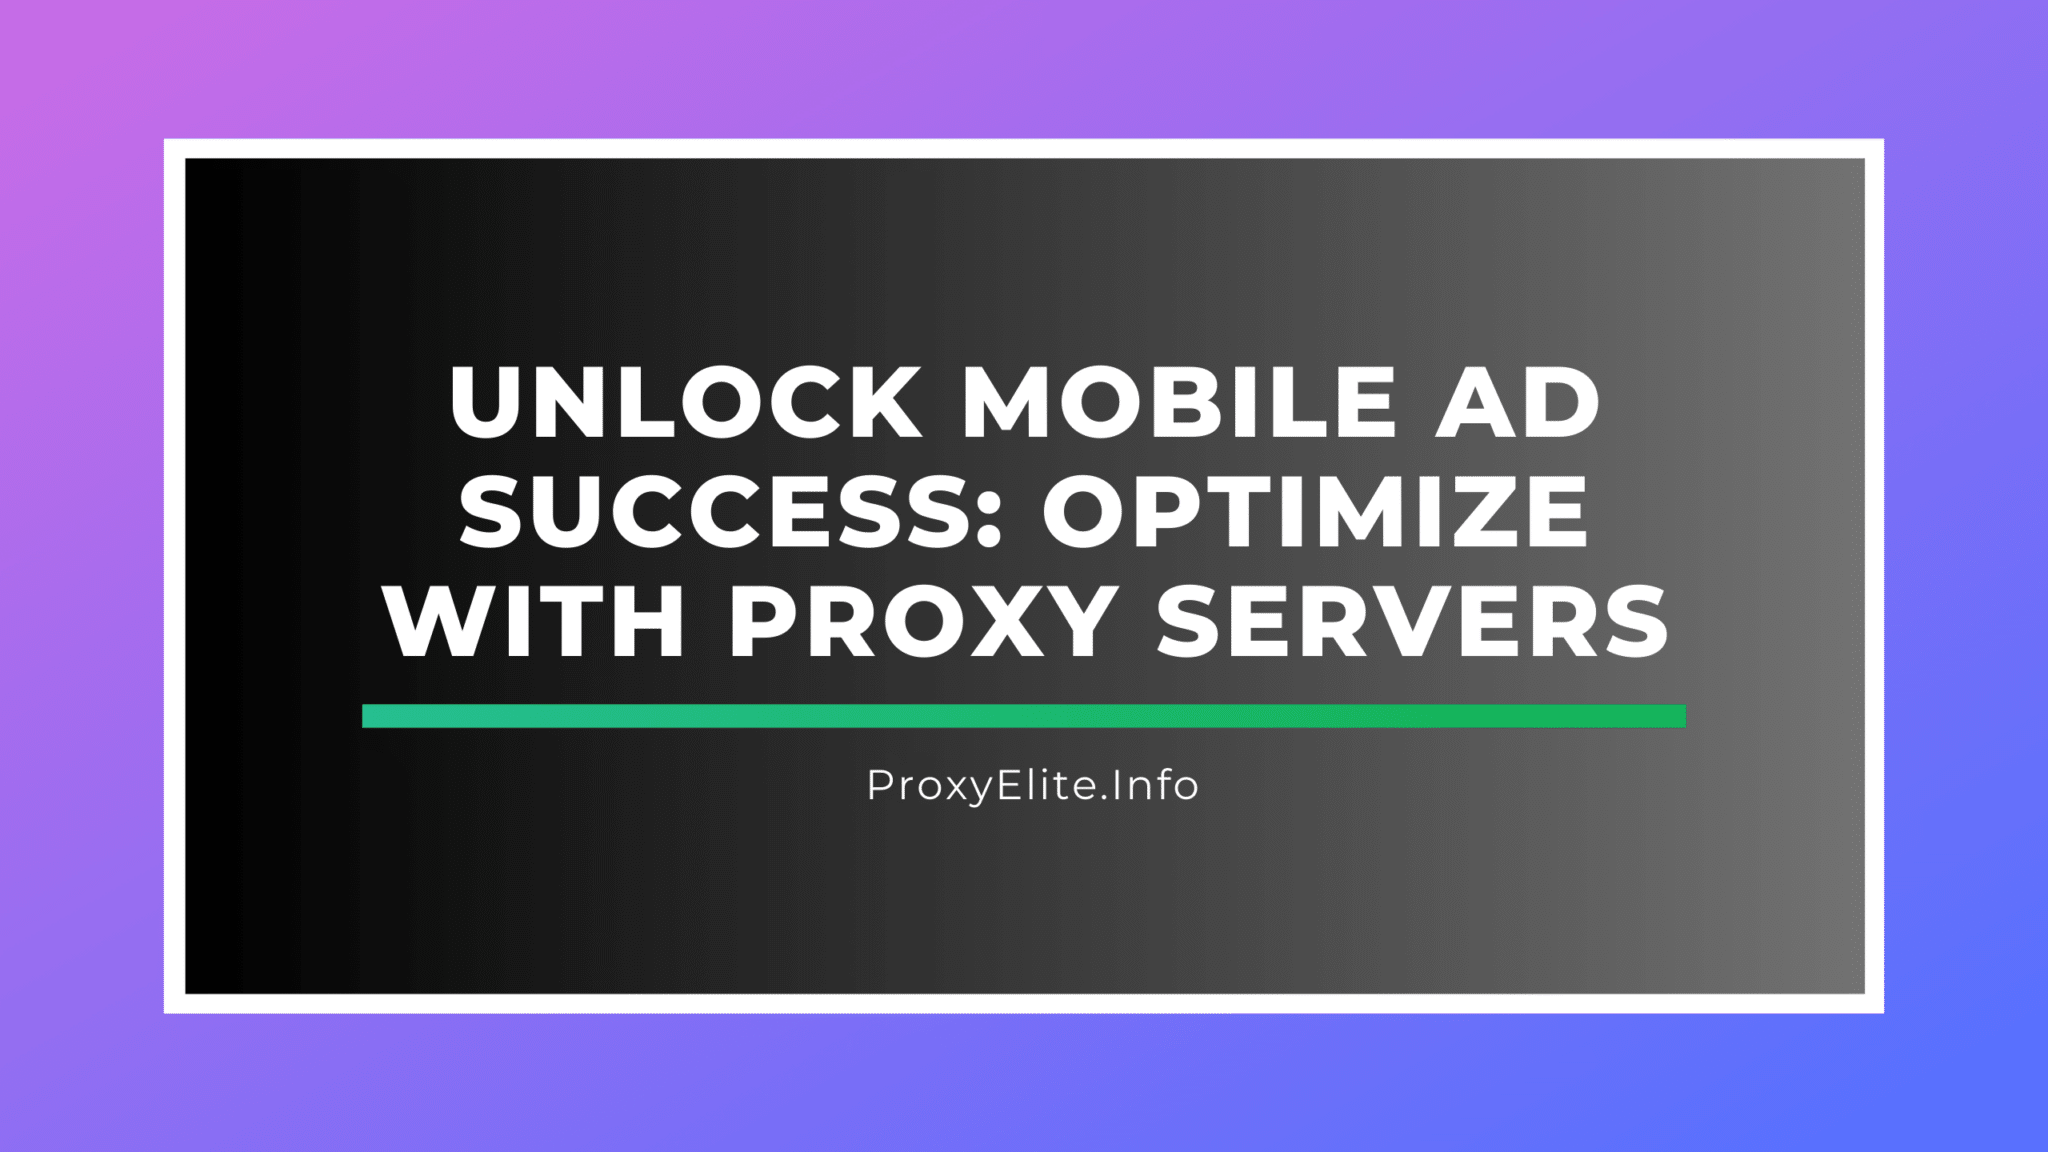 Für den Erfolg mobiler Werbung sorgen: Optimierung mit Proxy-Servern